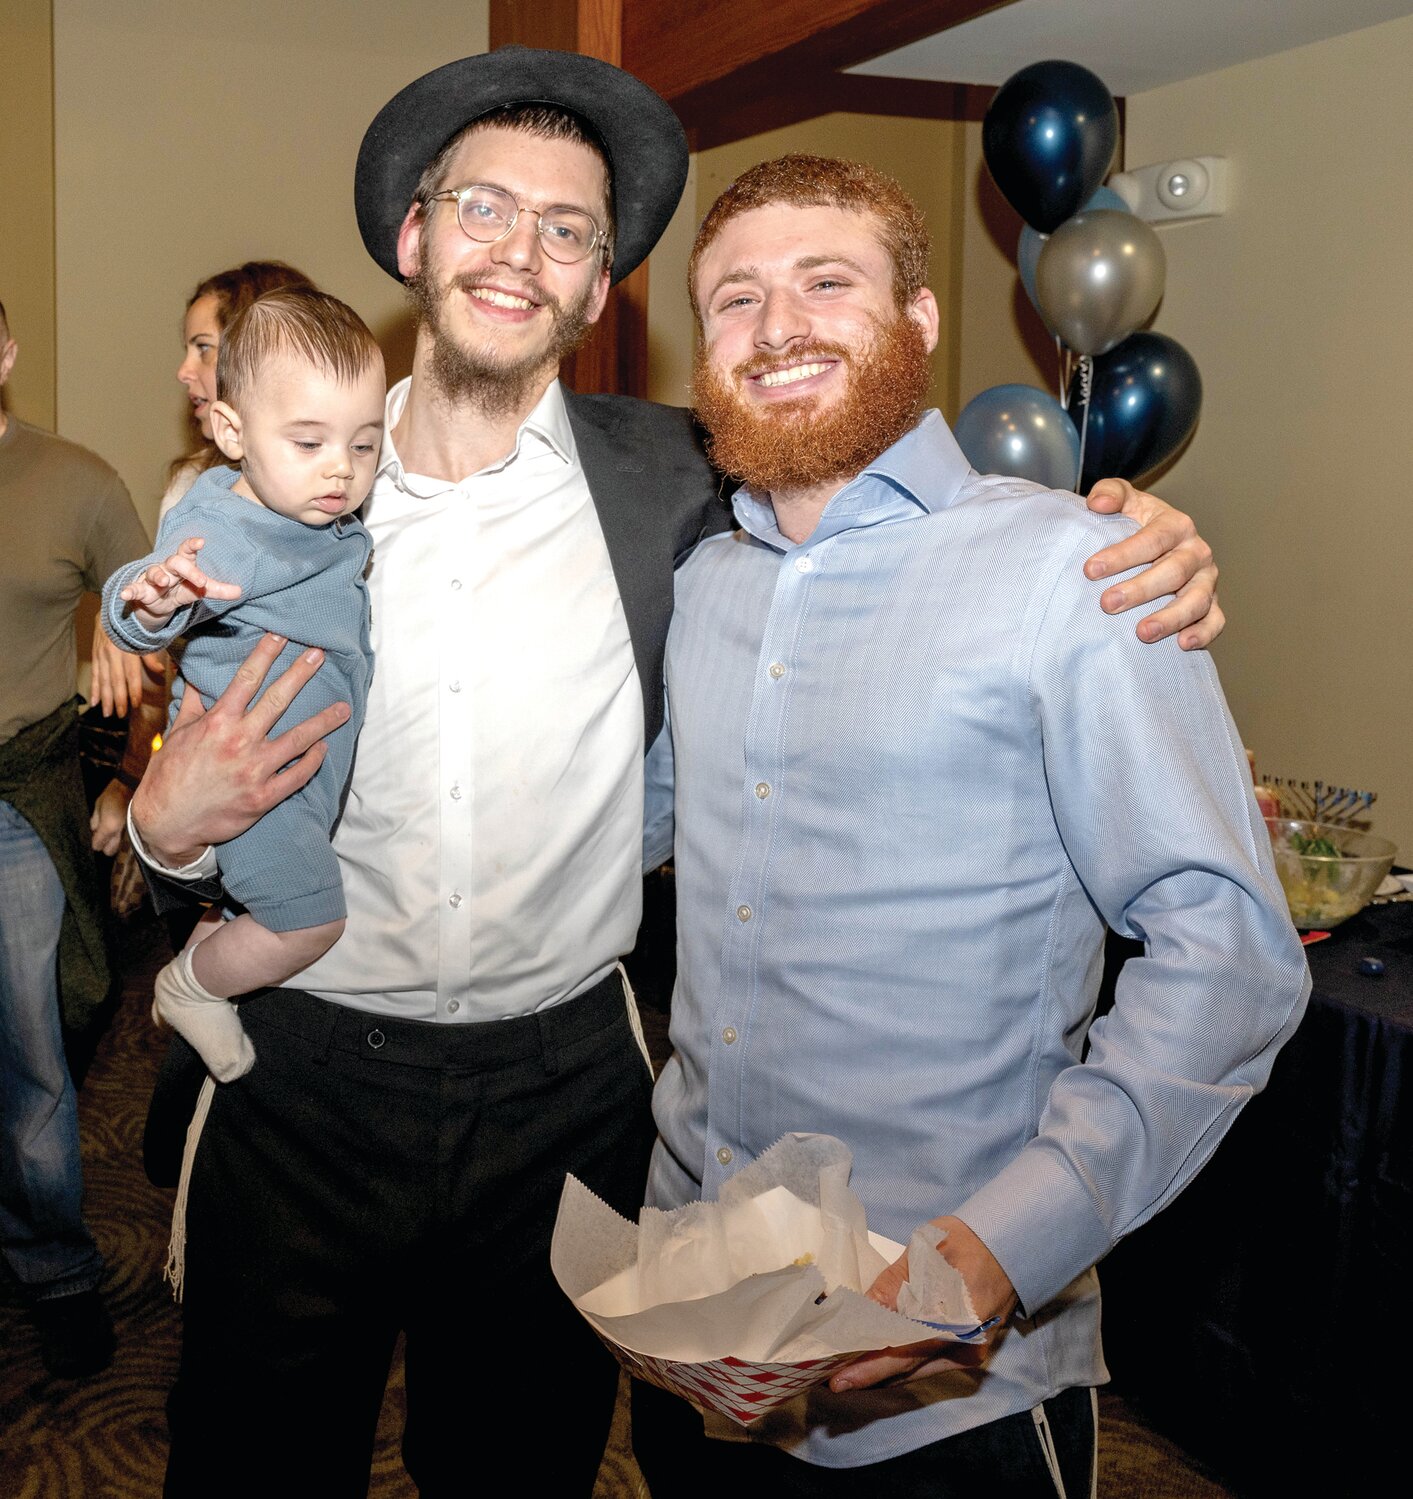 Uziel Weinstein, left, holding baby Mendele Weinstein, and Shneur Piekarski, right.